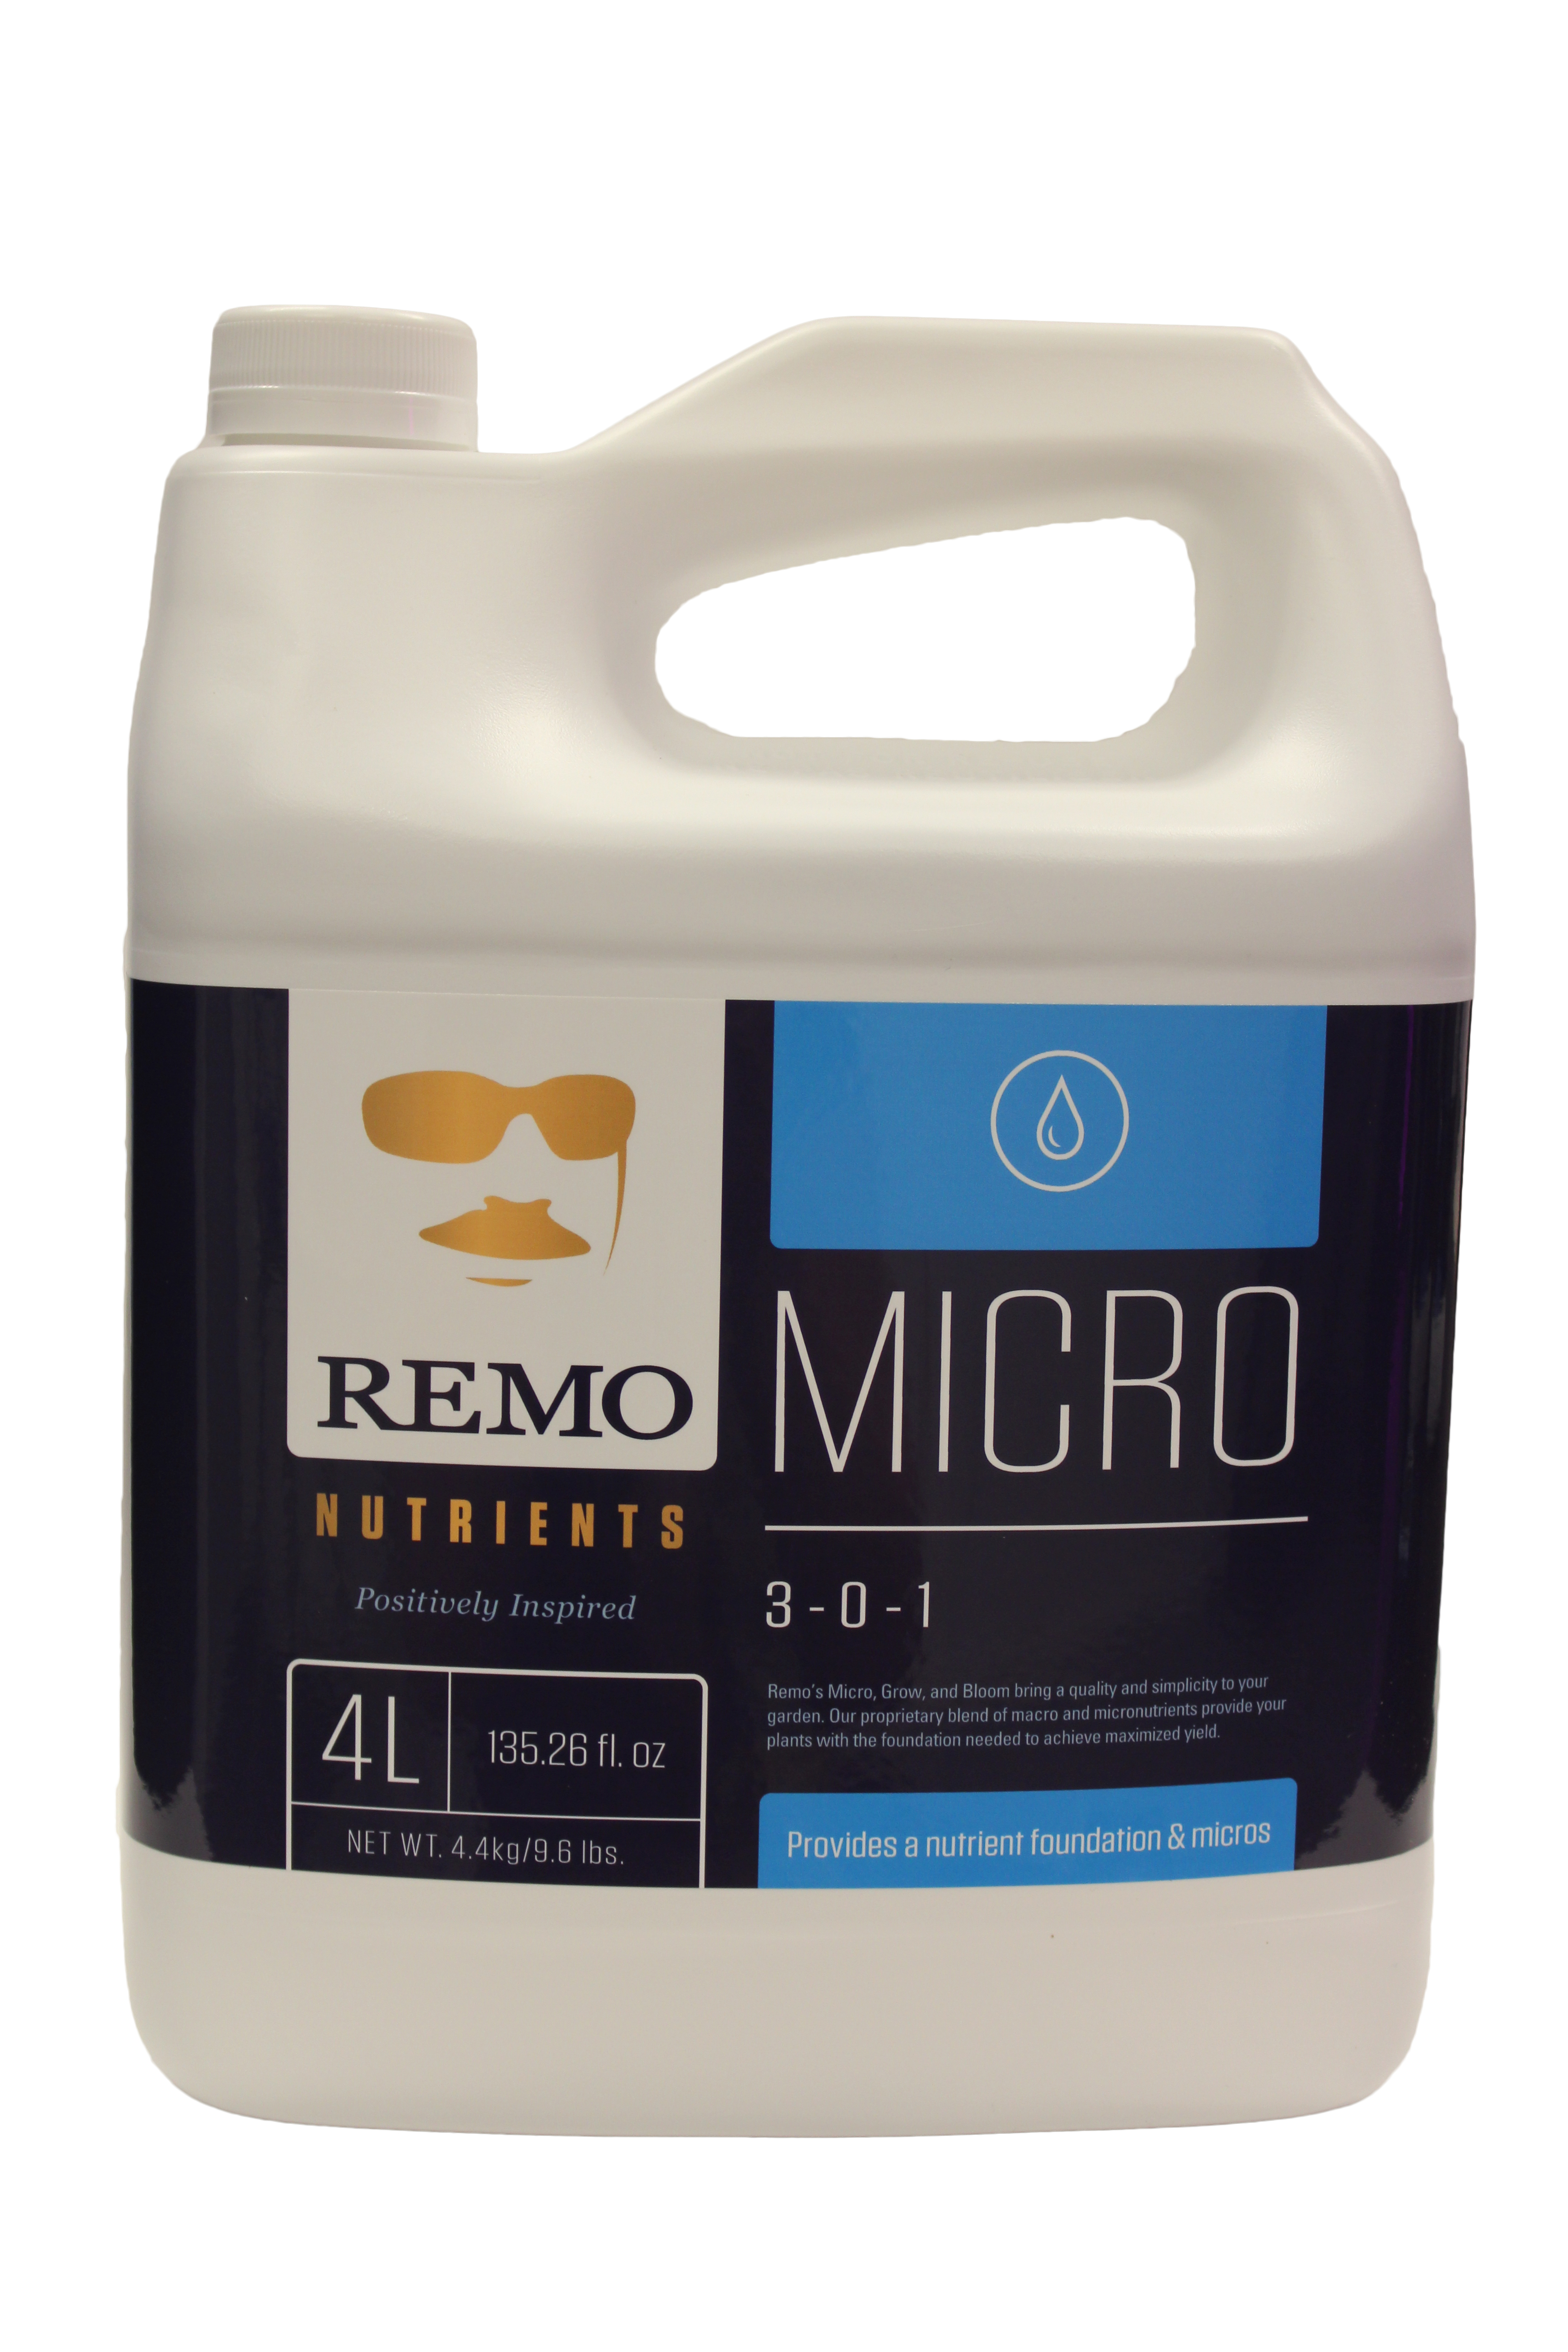 Remo's Micro 4L